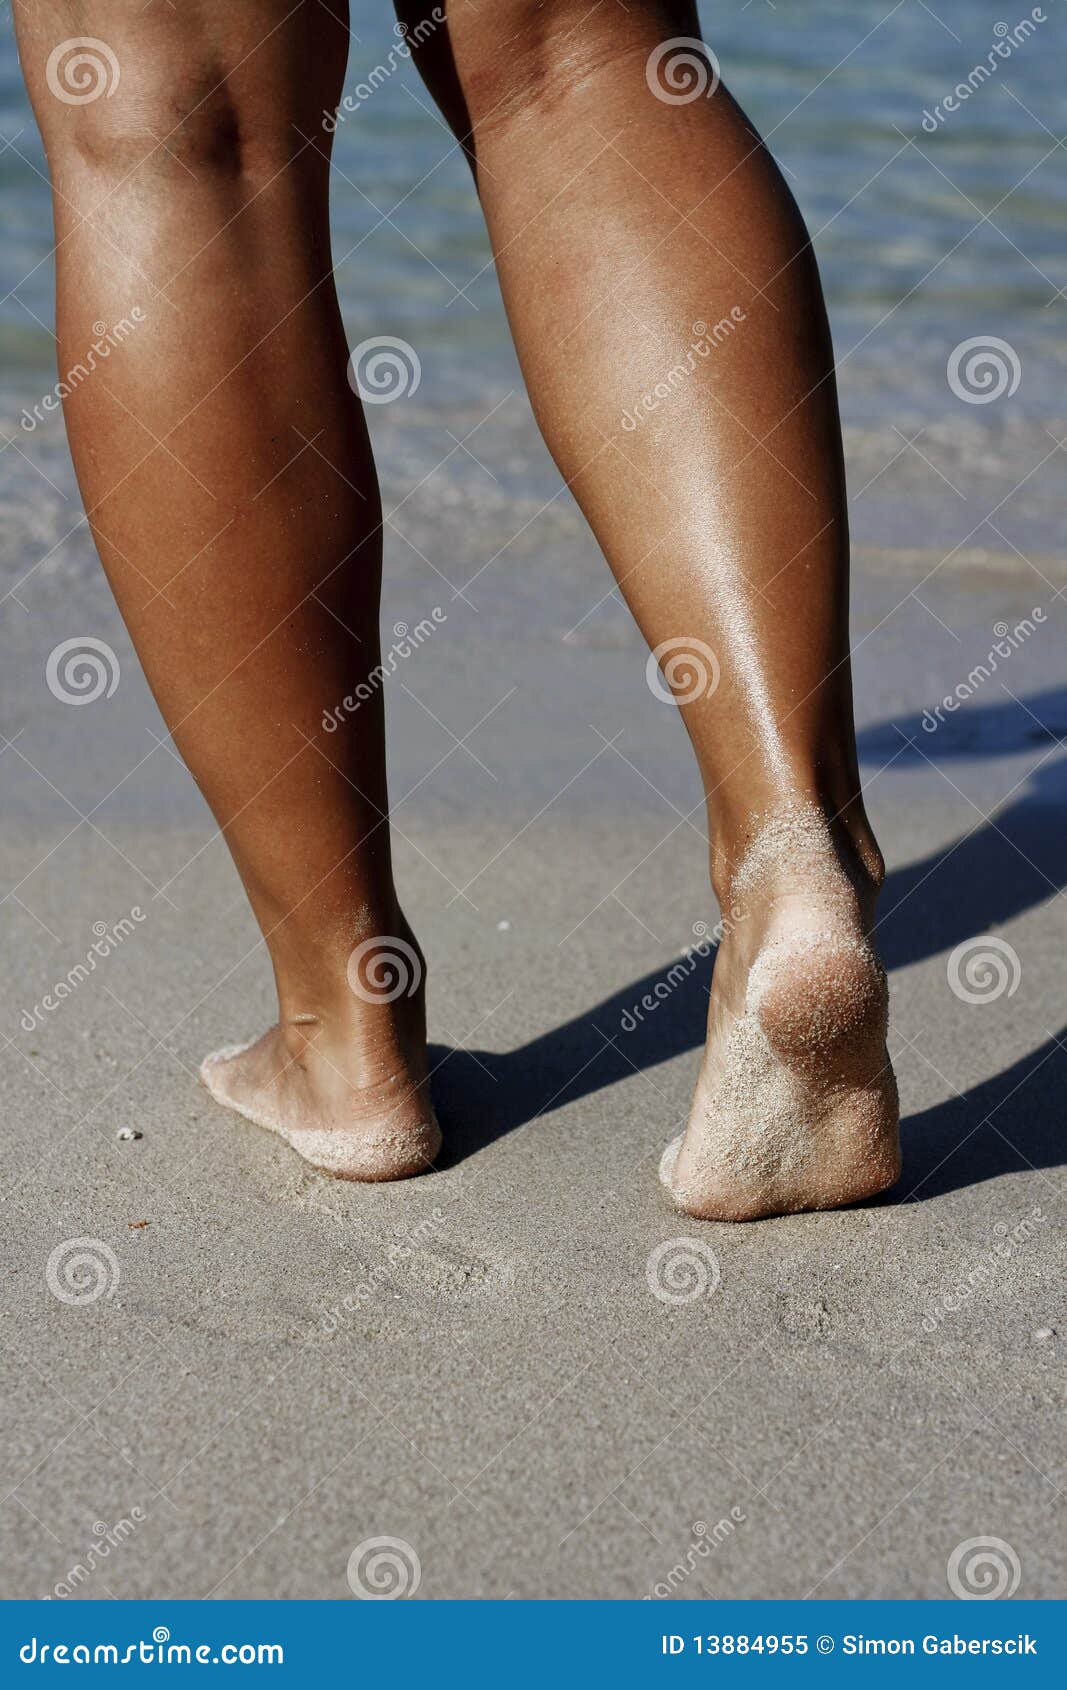 tanned-legs-13884955.jpg